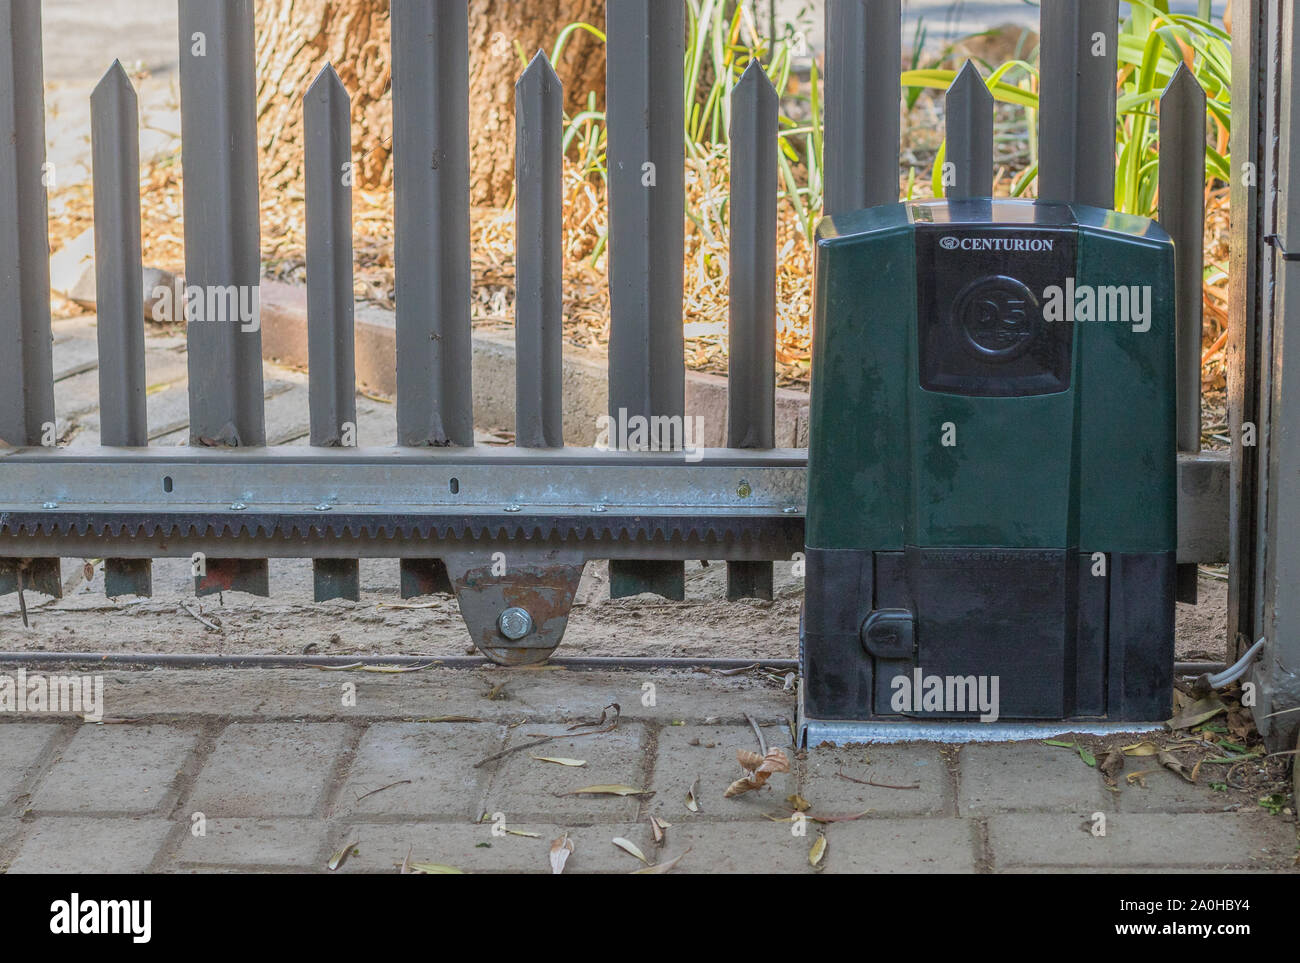 Alberton, Südafrika - ein Hauptmann elektrisches Tor Motor für eine  automatisierte elektrische Residential gate Bild im Querformat  Stockfotografie - Alamy